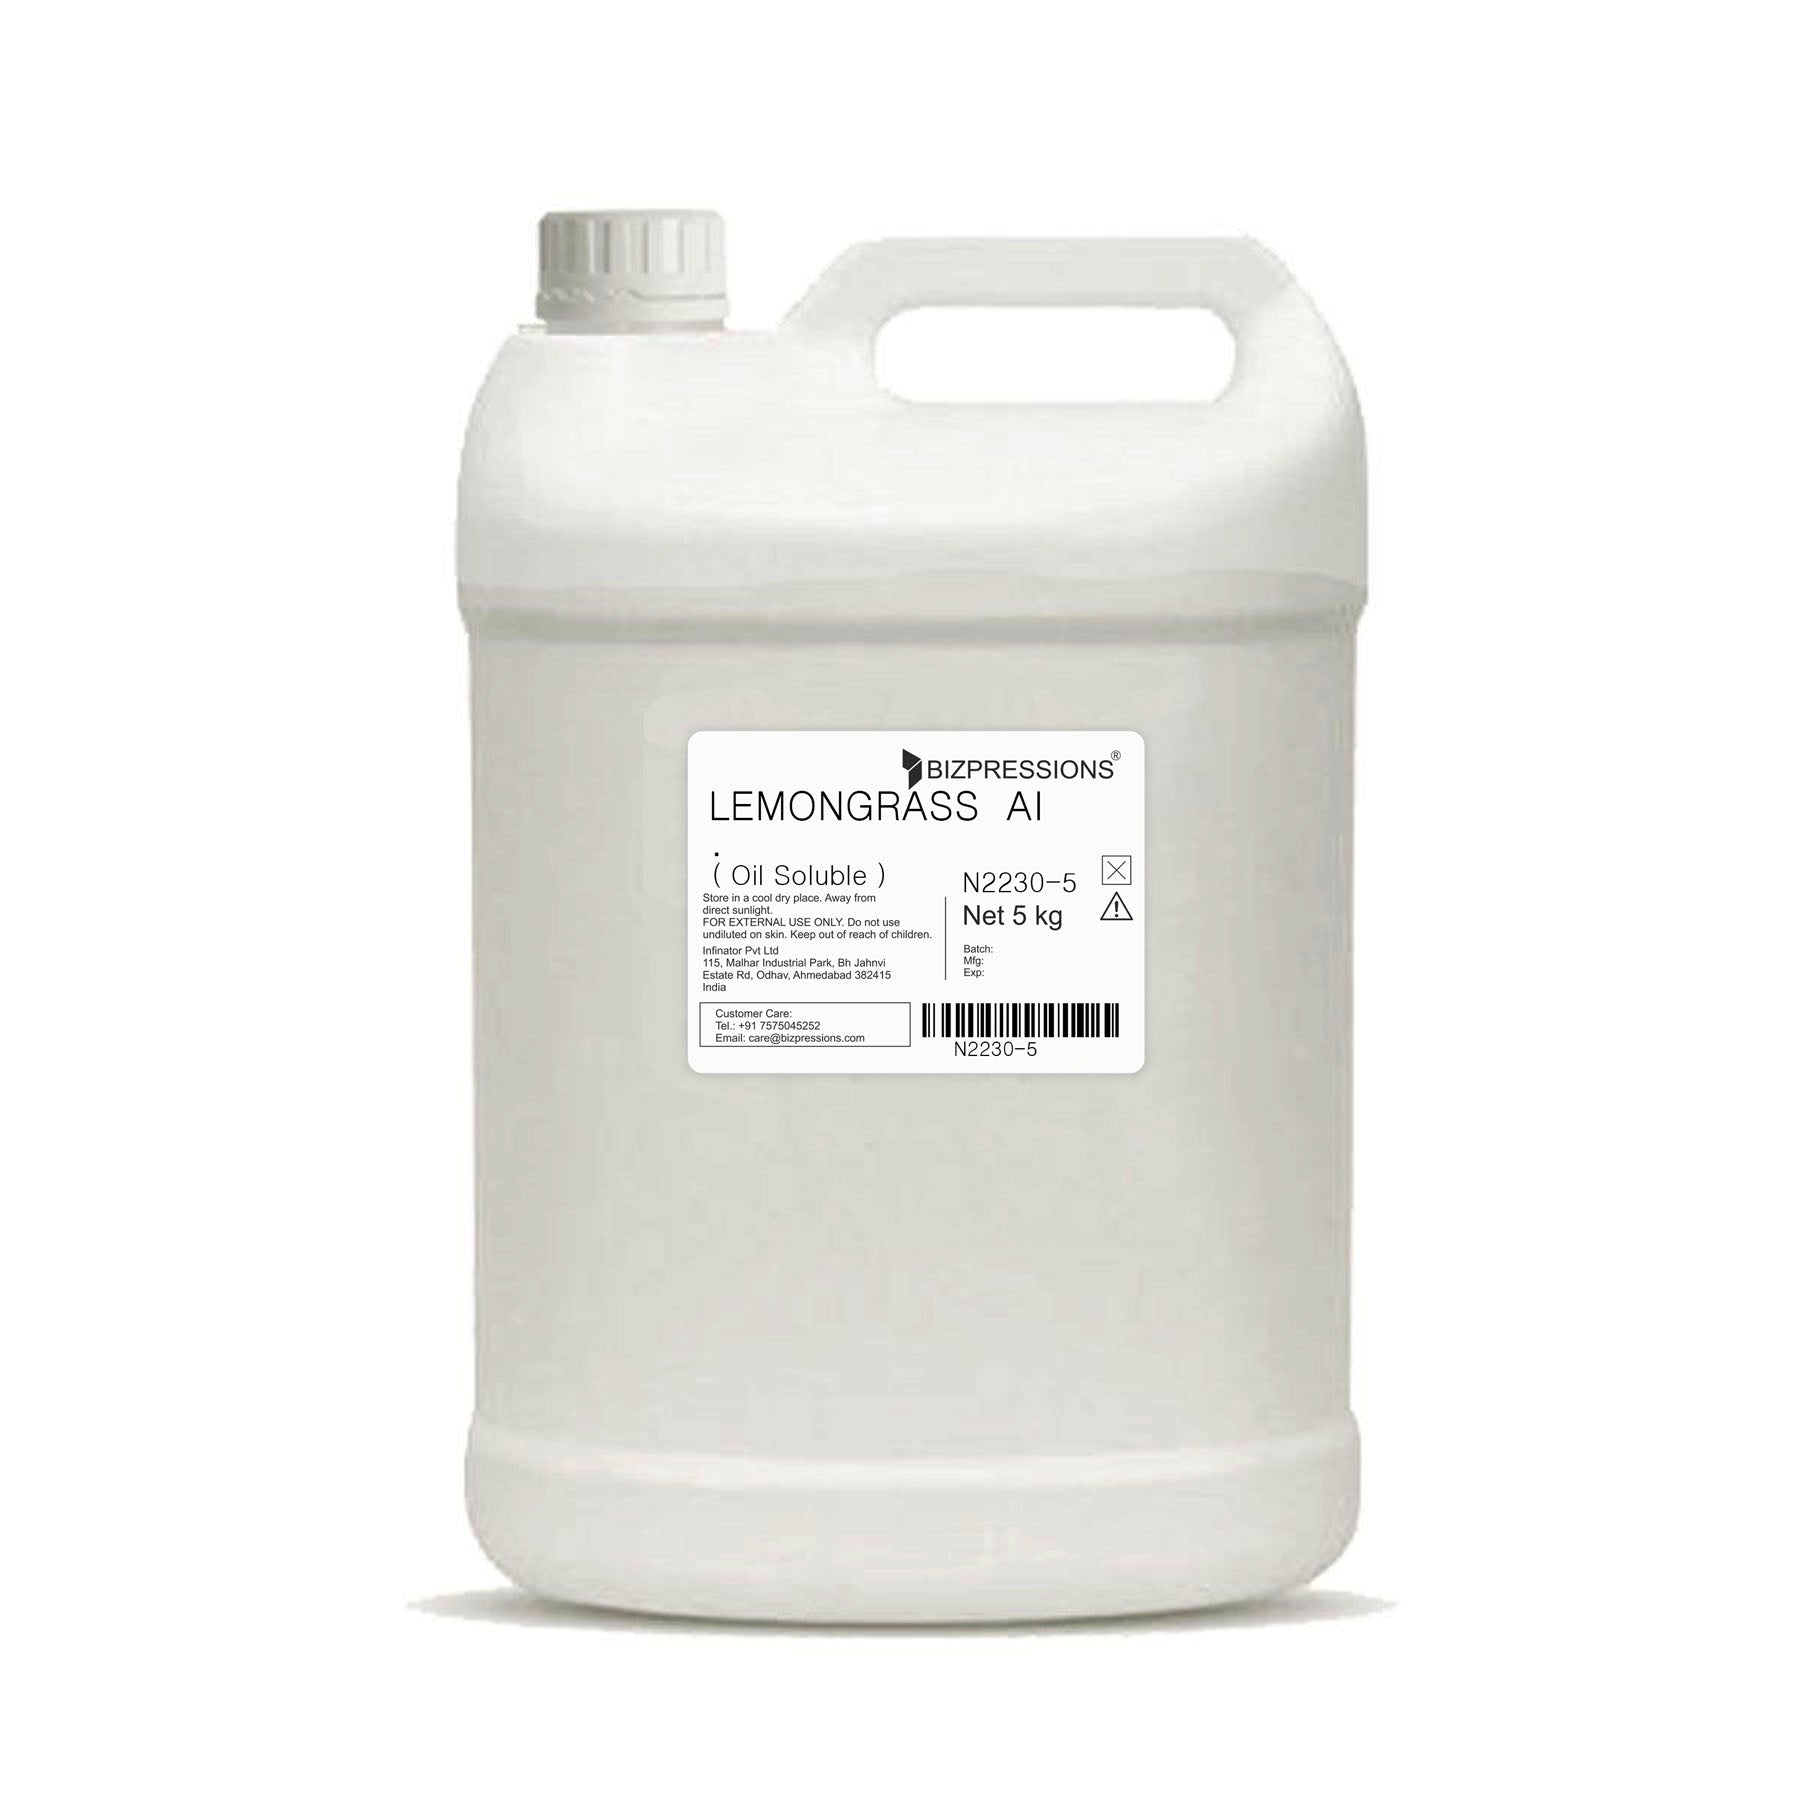 LEMONGRASS AI - Fragrance ( Oil Soluble ) - 5 kg